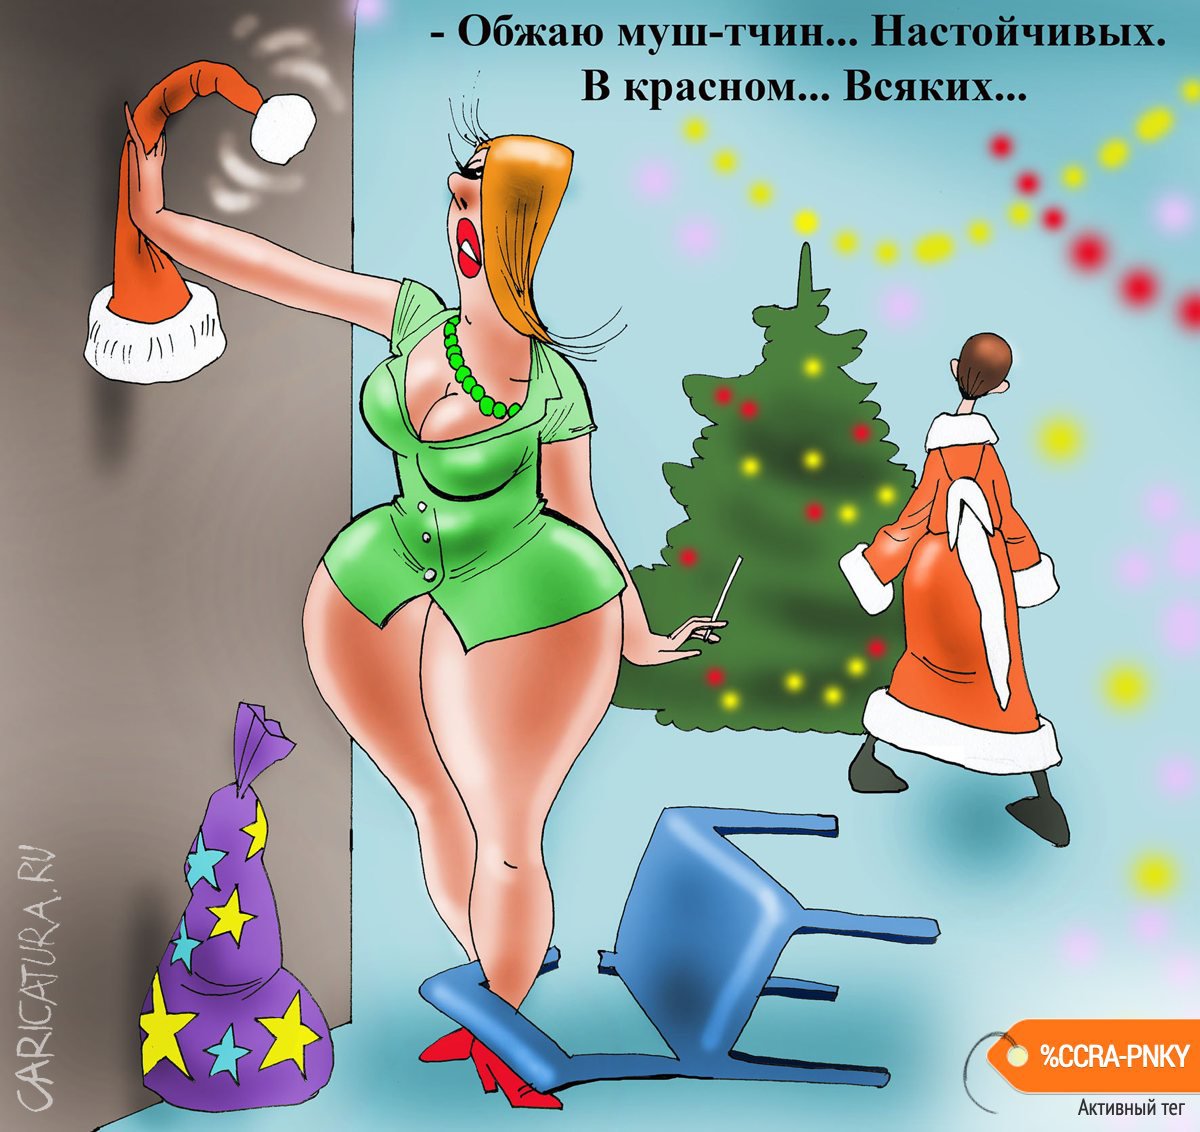 Карикатура "Корпоратив", Александр Попов